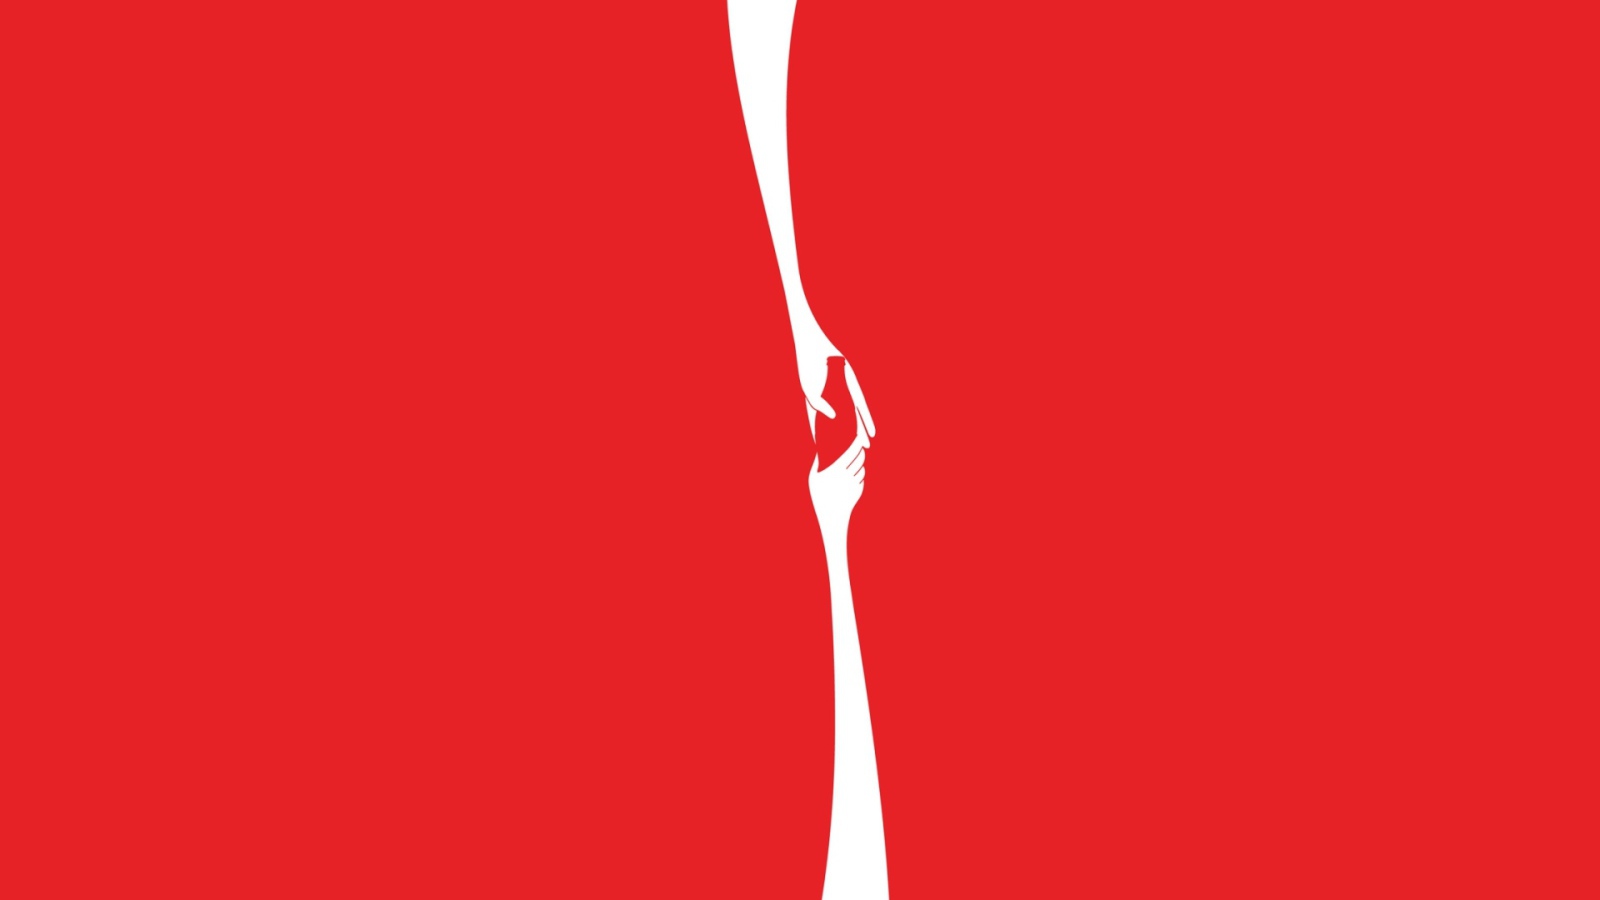 Реклама Кока-колы